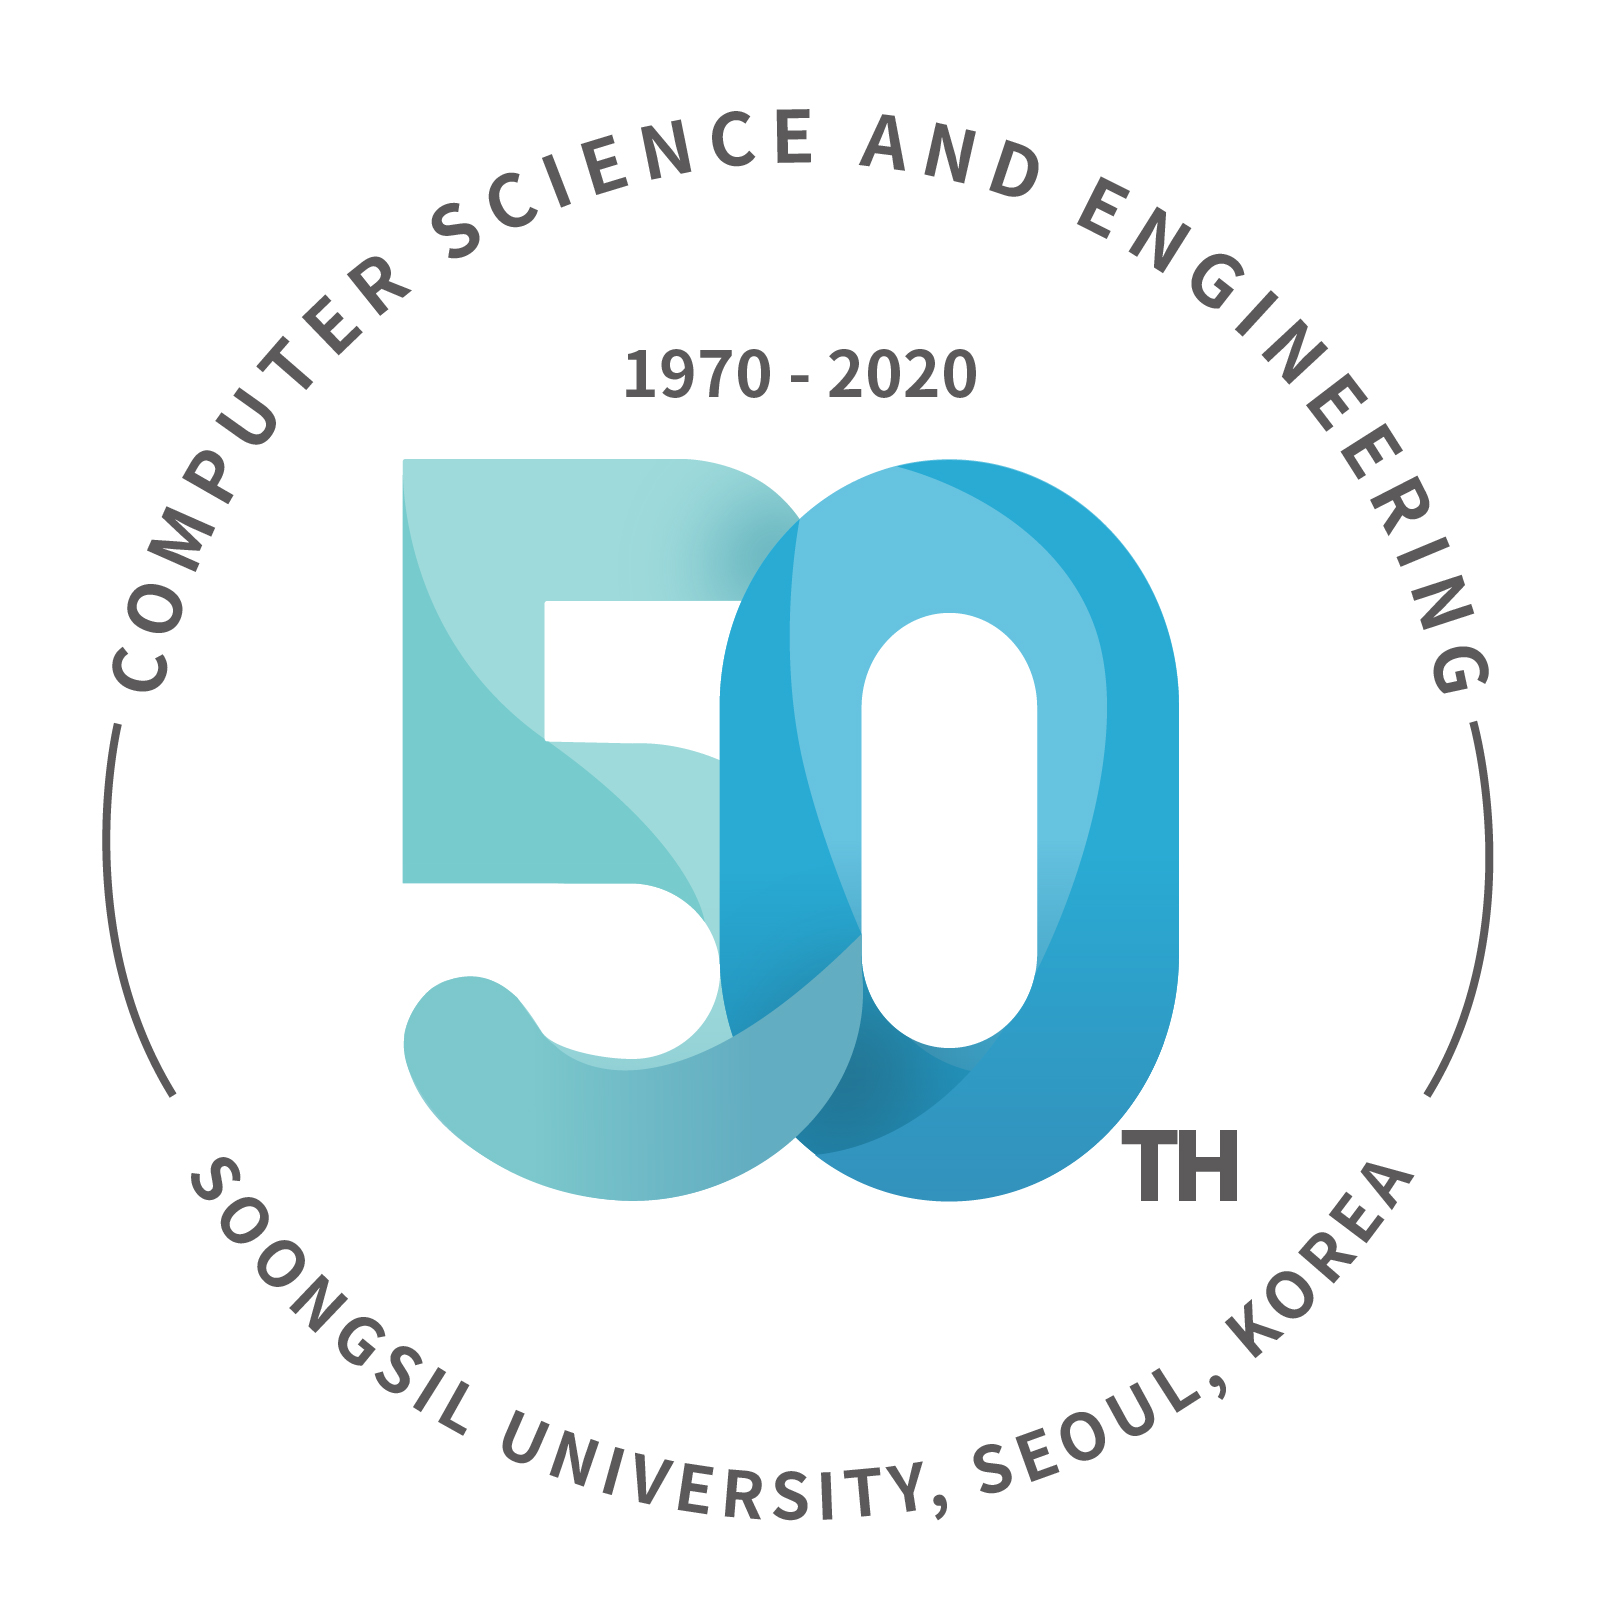 컴퓨터학부 설립 50주년 로고